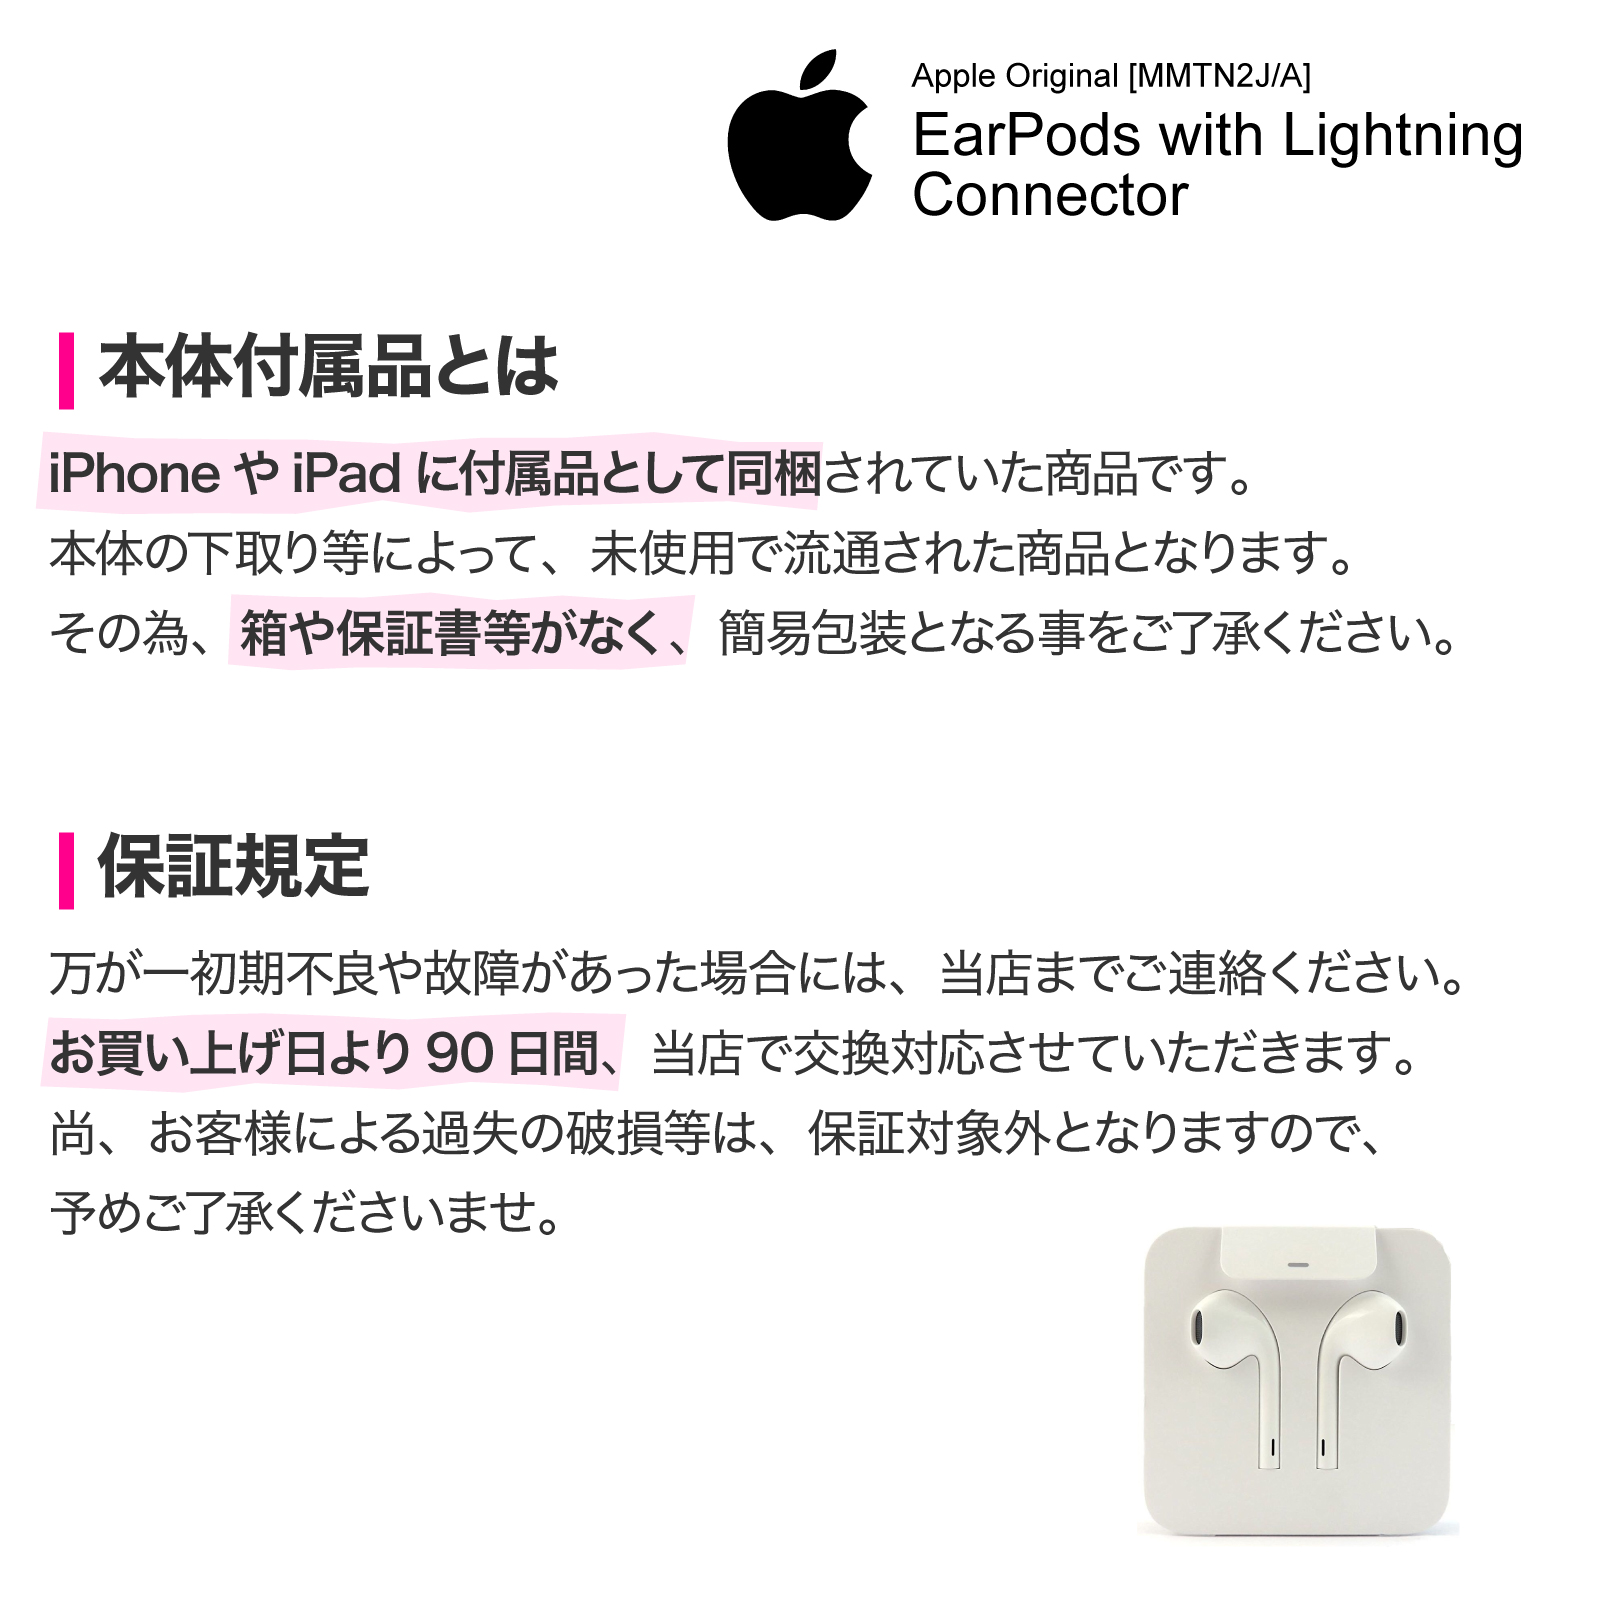 Apple 純正 EarPods with Lightning Connector ライトニング イヤホン iPhone アップル アイフォン  イヤーポッズ イヤーポッド MMTN2J/A :MMTN2JA-K:ガジェットギークス !店 通販 